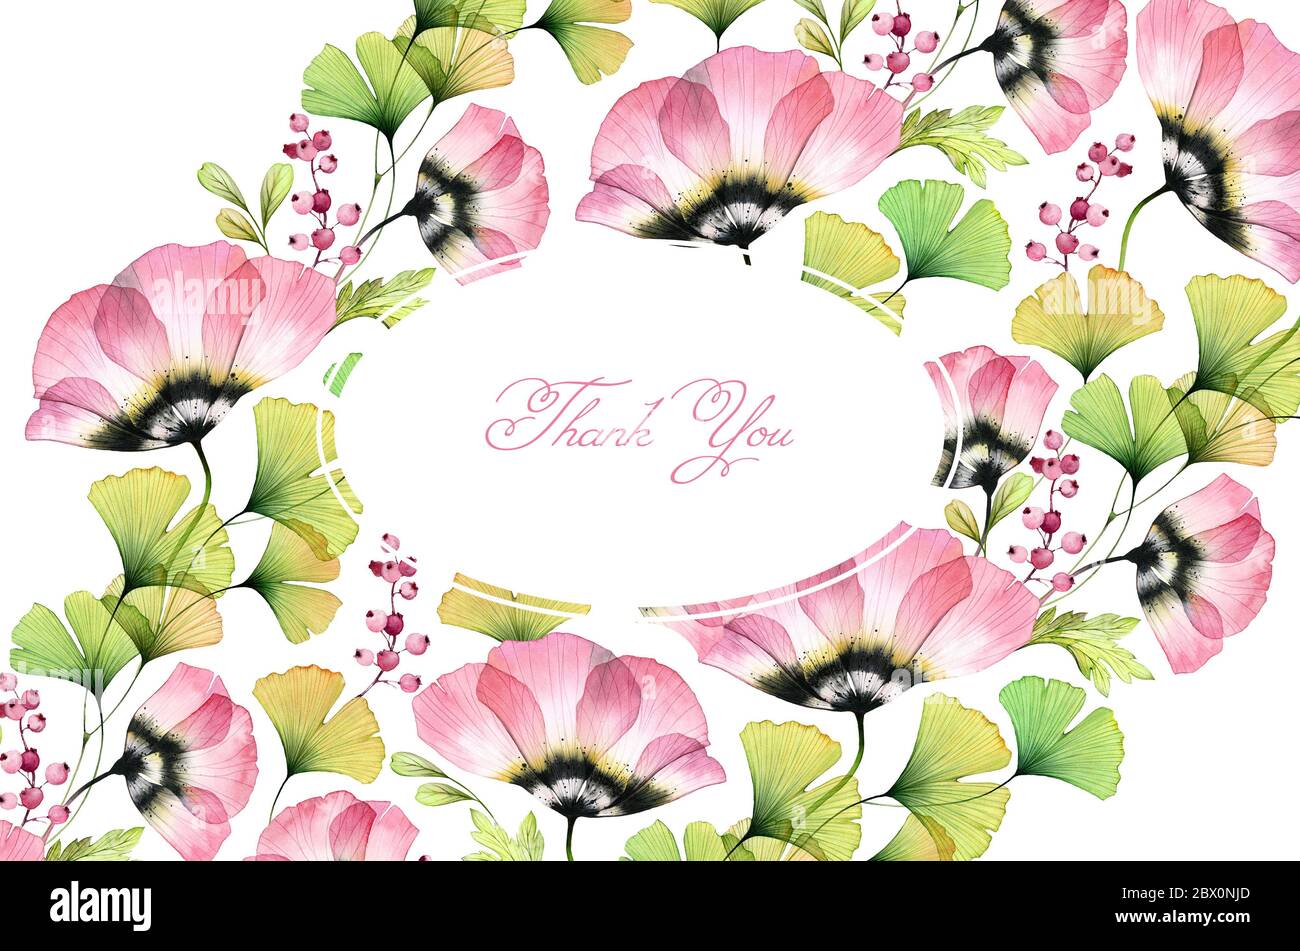 Aquarell floralen Hintergrund. Große Feldblumen, Tulpen, Gingko-Blätter. Horizontale Dankeskarte mit Platz für benutzerdefinierten Text Stockfoto